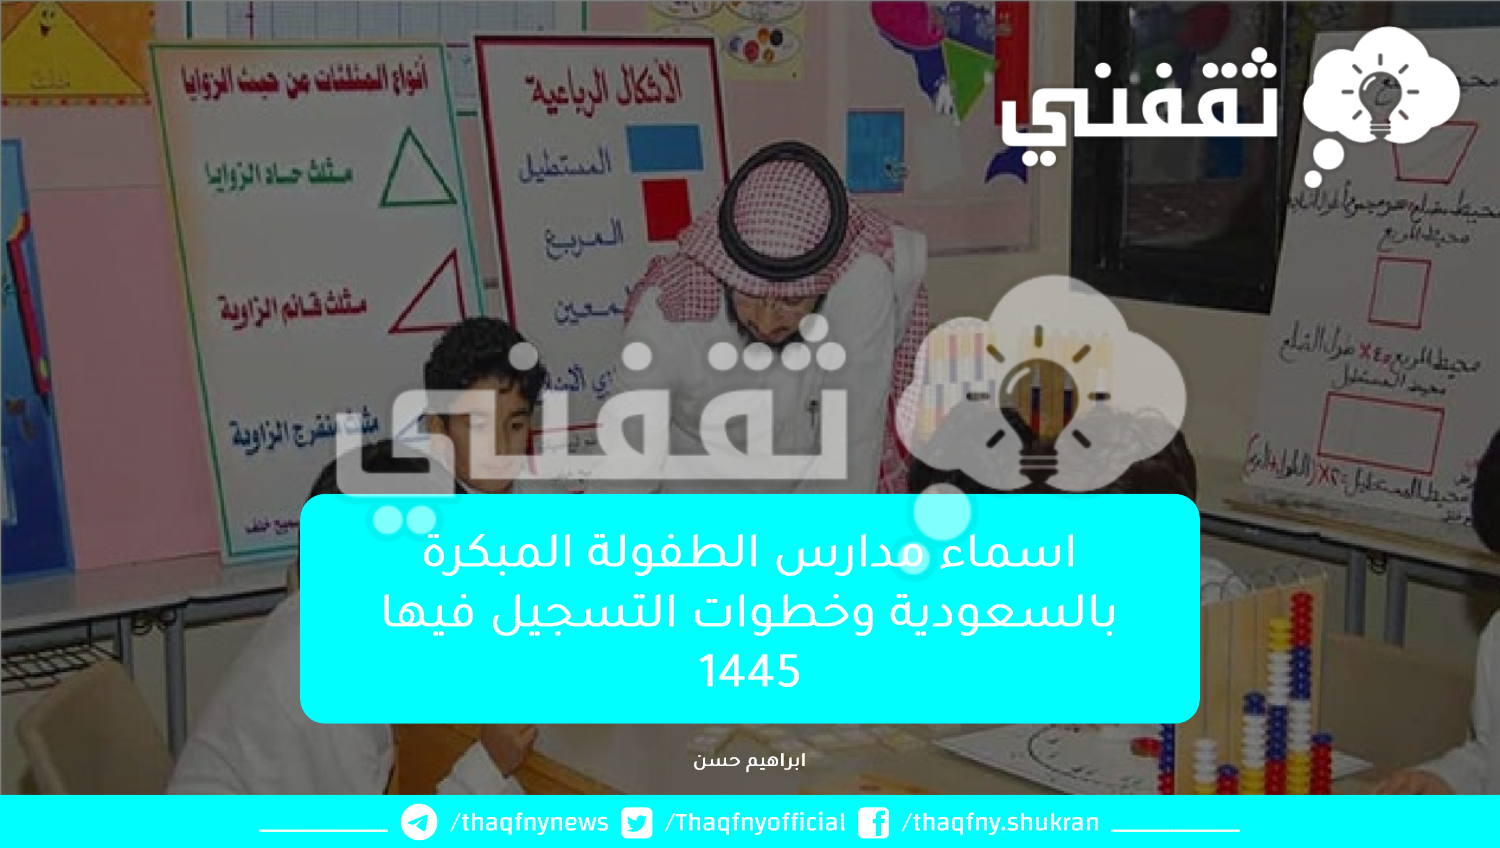 اسماء مدارس الطفولة المبكرة بالسعودية وخطوات التسجيل فيها 1445